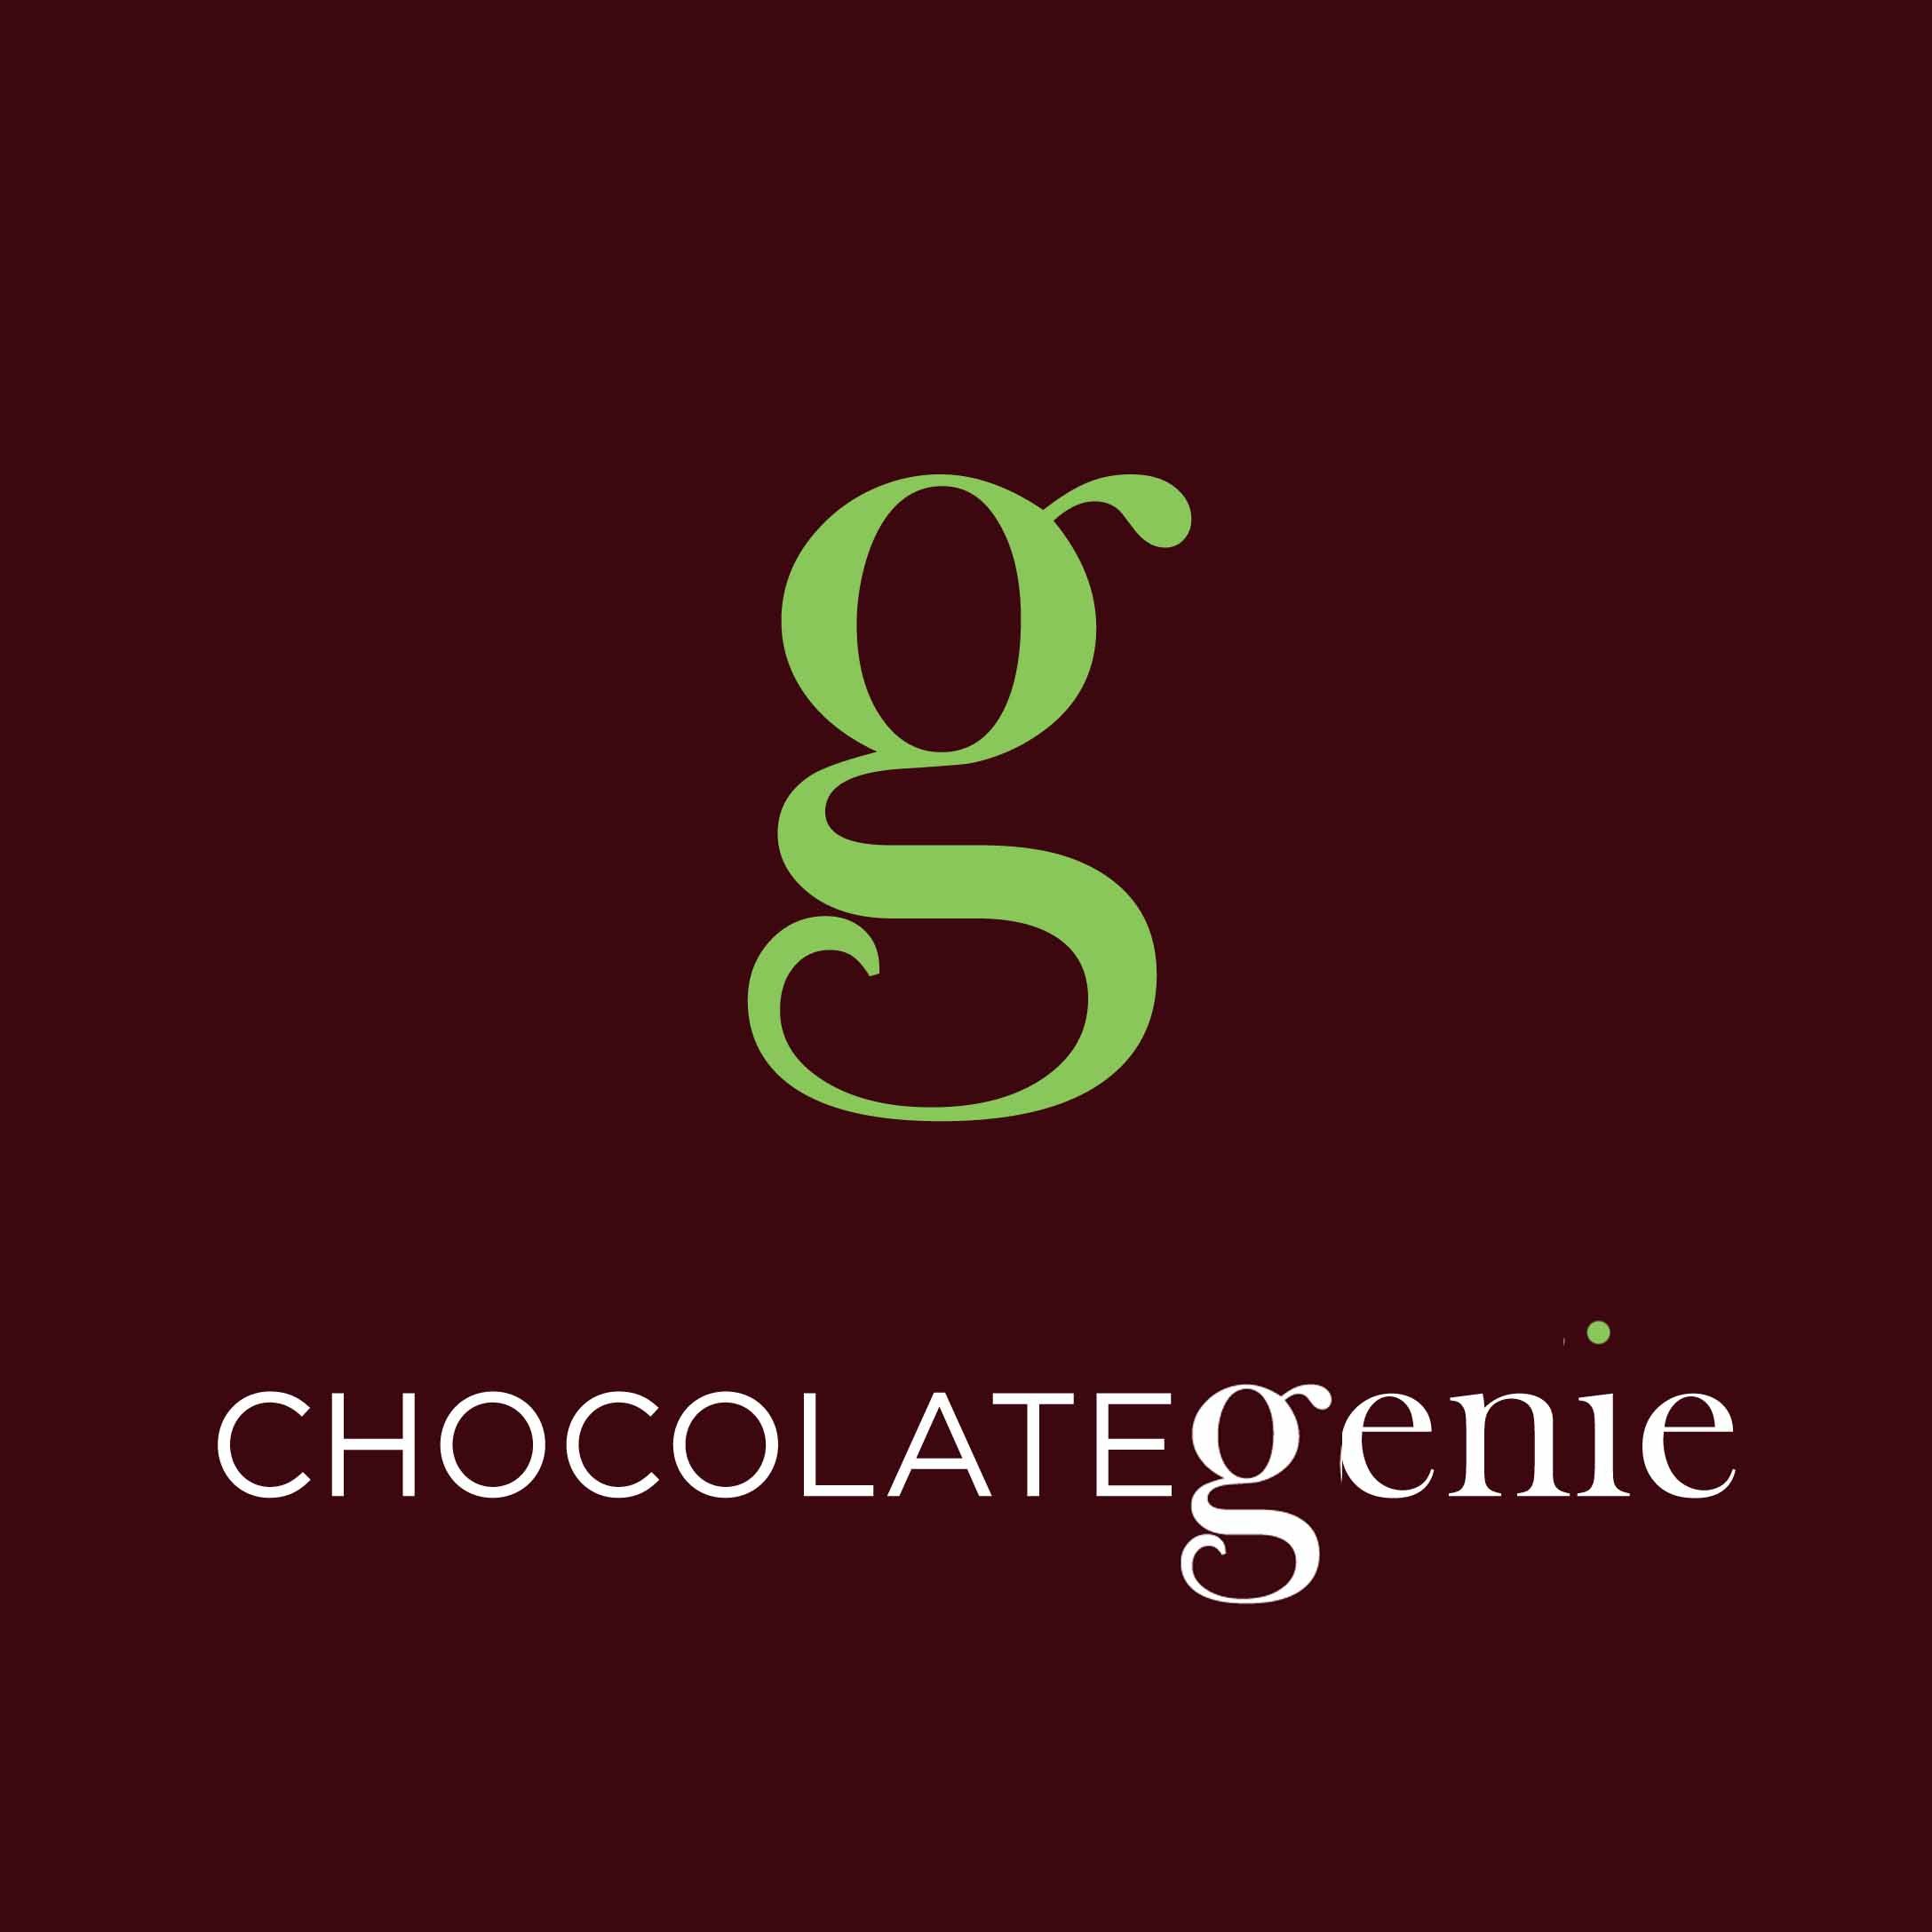 Chocolate Genie